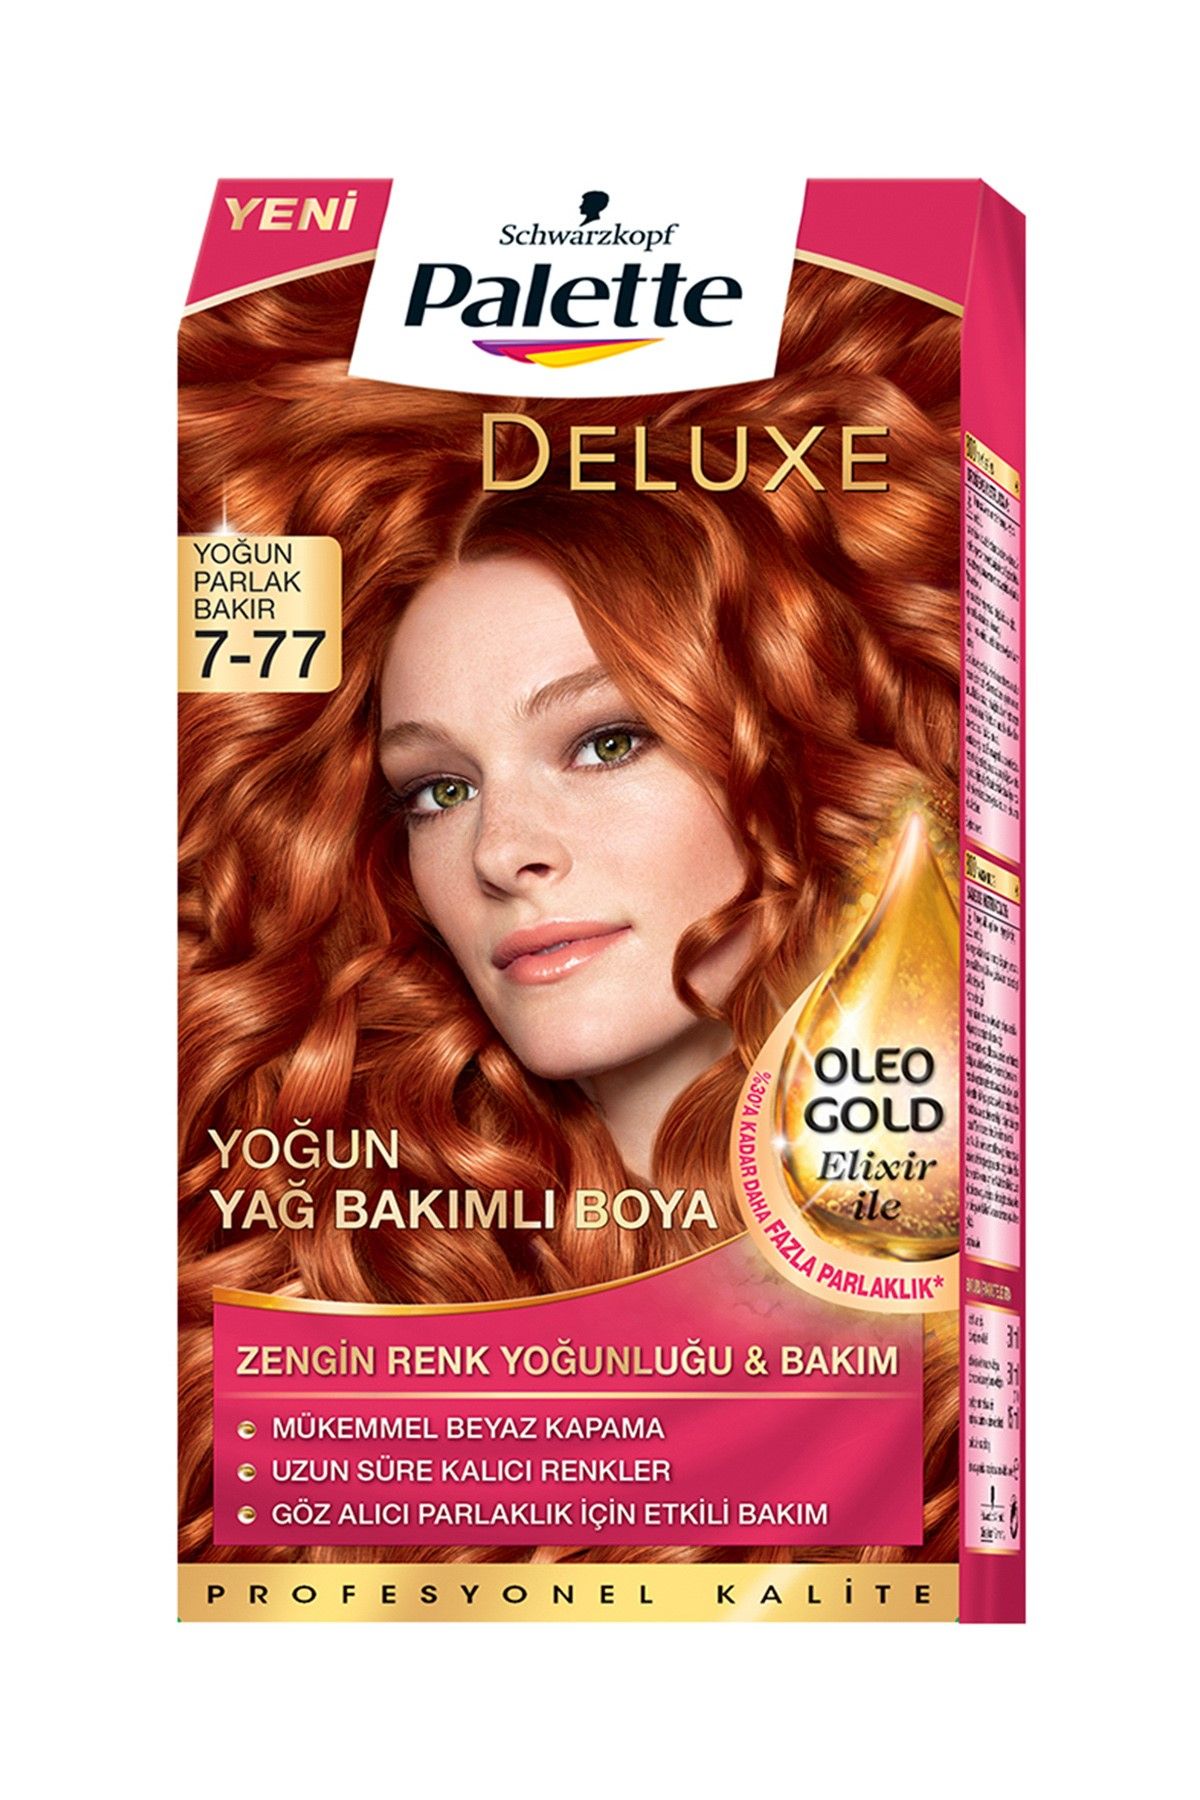 Palette Yoğun Bakır Saç Boyası - Deluxe 7-77  4015000975704